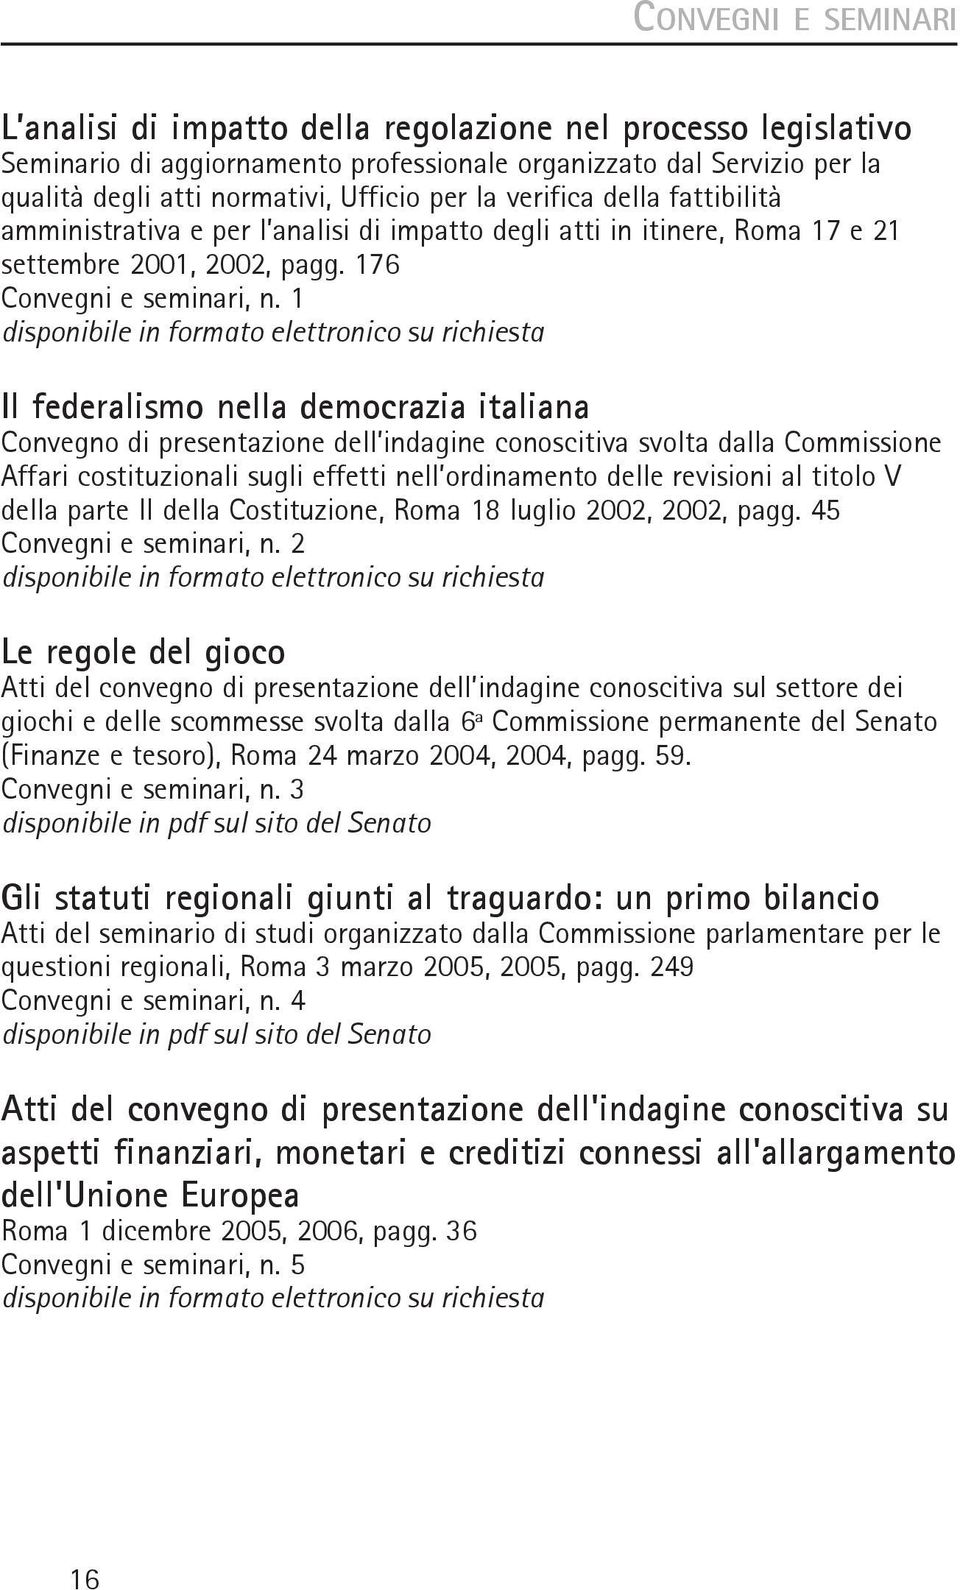 1 Il federalismo nella democrazia italiana Convegno di presentazione dell indagine conoscitiva svolta dalla Commissione Affari costituzionali sugli effetti nell ordinamento delle revisioni al titolo